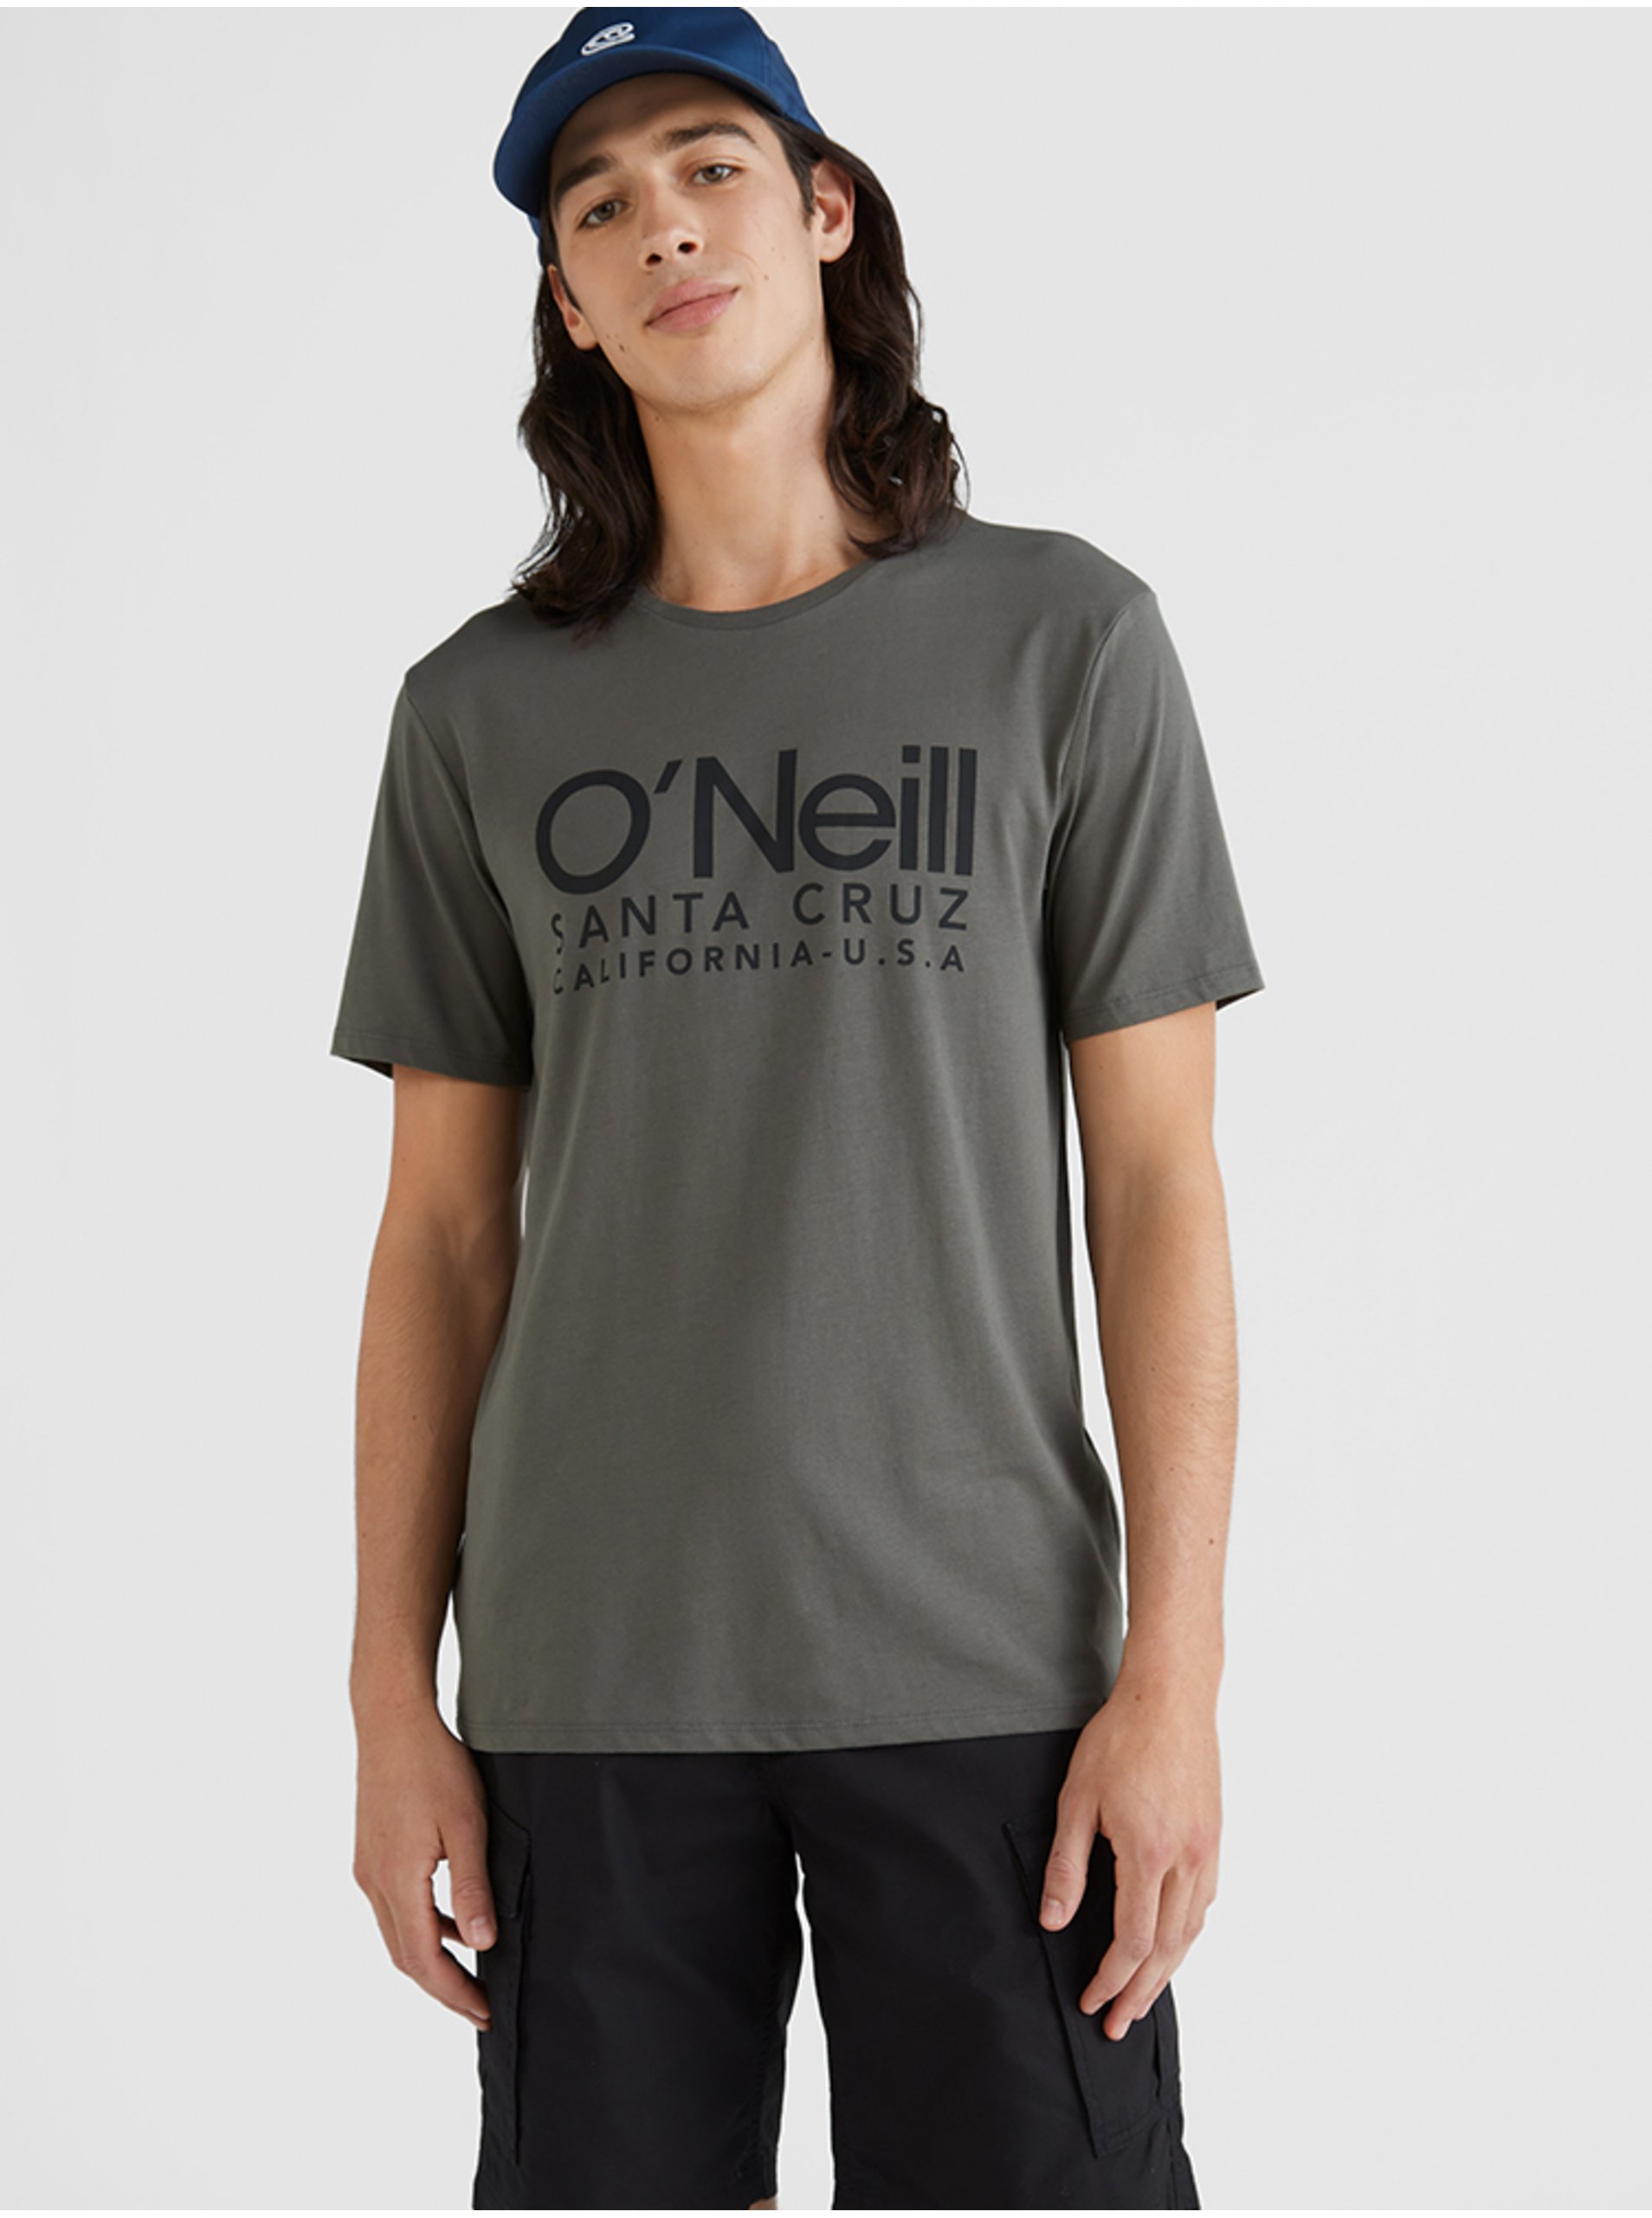 Lacno Tmavozelené pánske tričko O'Neill Cali